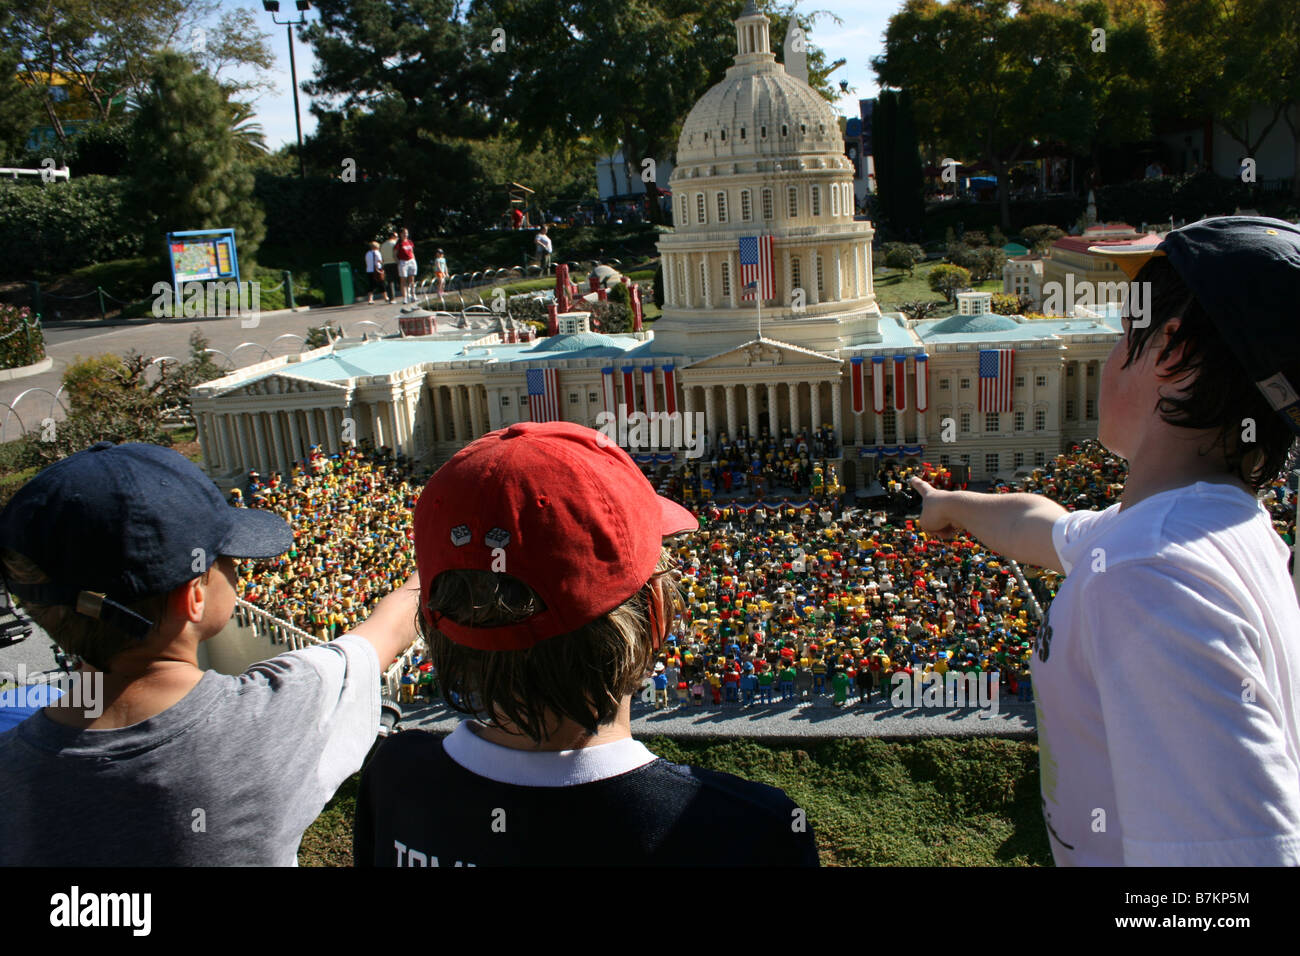 Les enfants l'étude de maquettes miniatures version Lego de Obama inauguration, Capitol Building, Washington DC, Legoland California, Banque D'Images